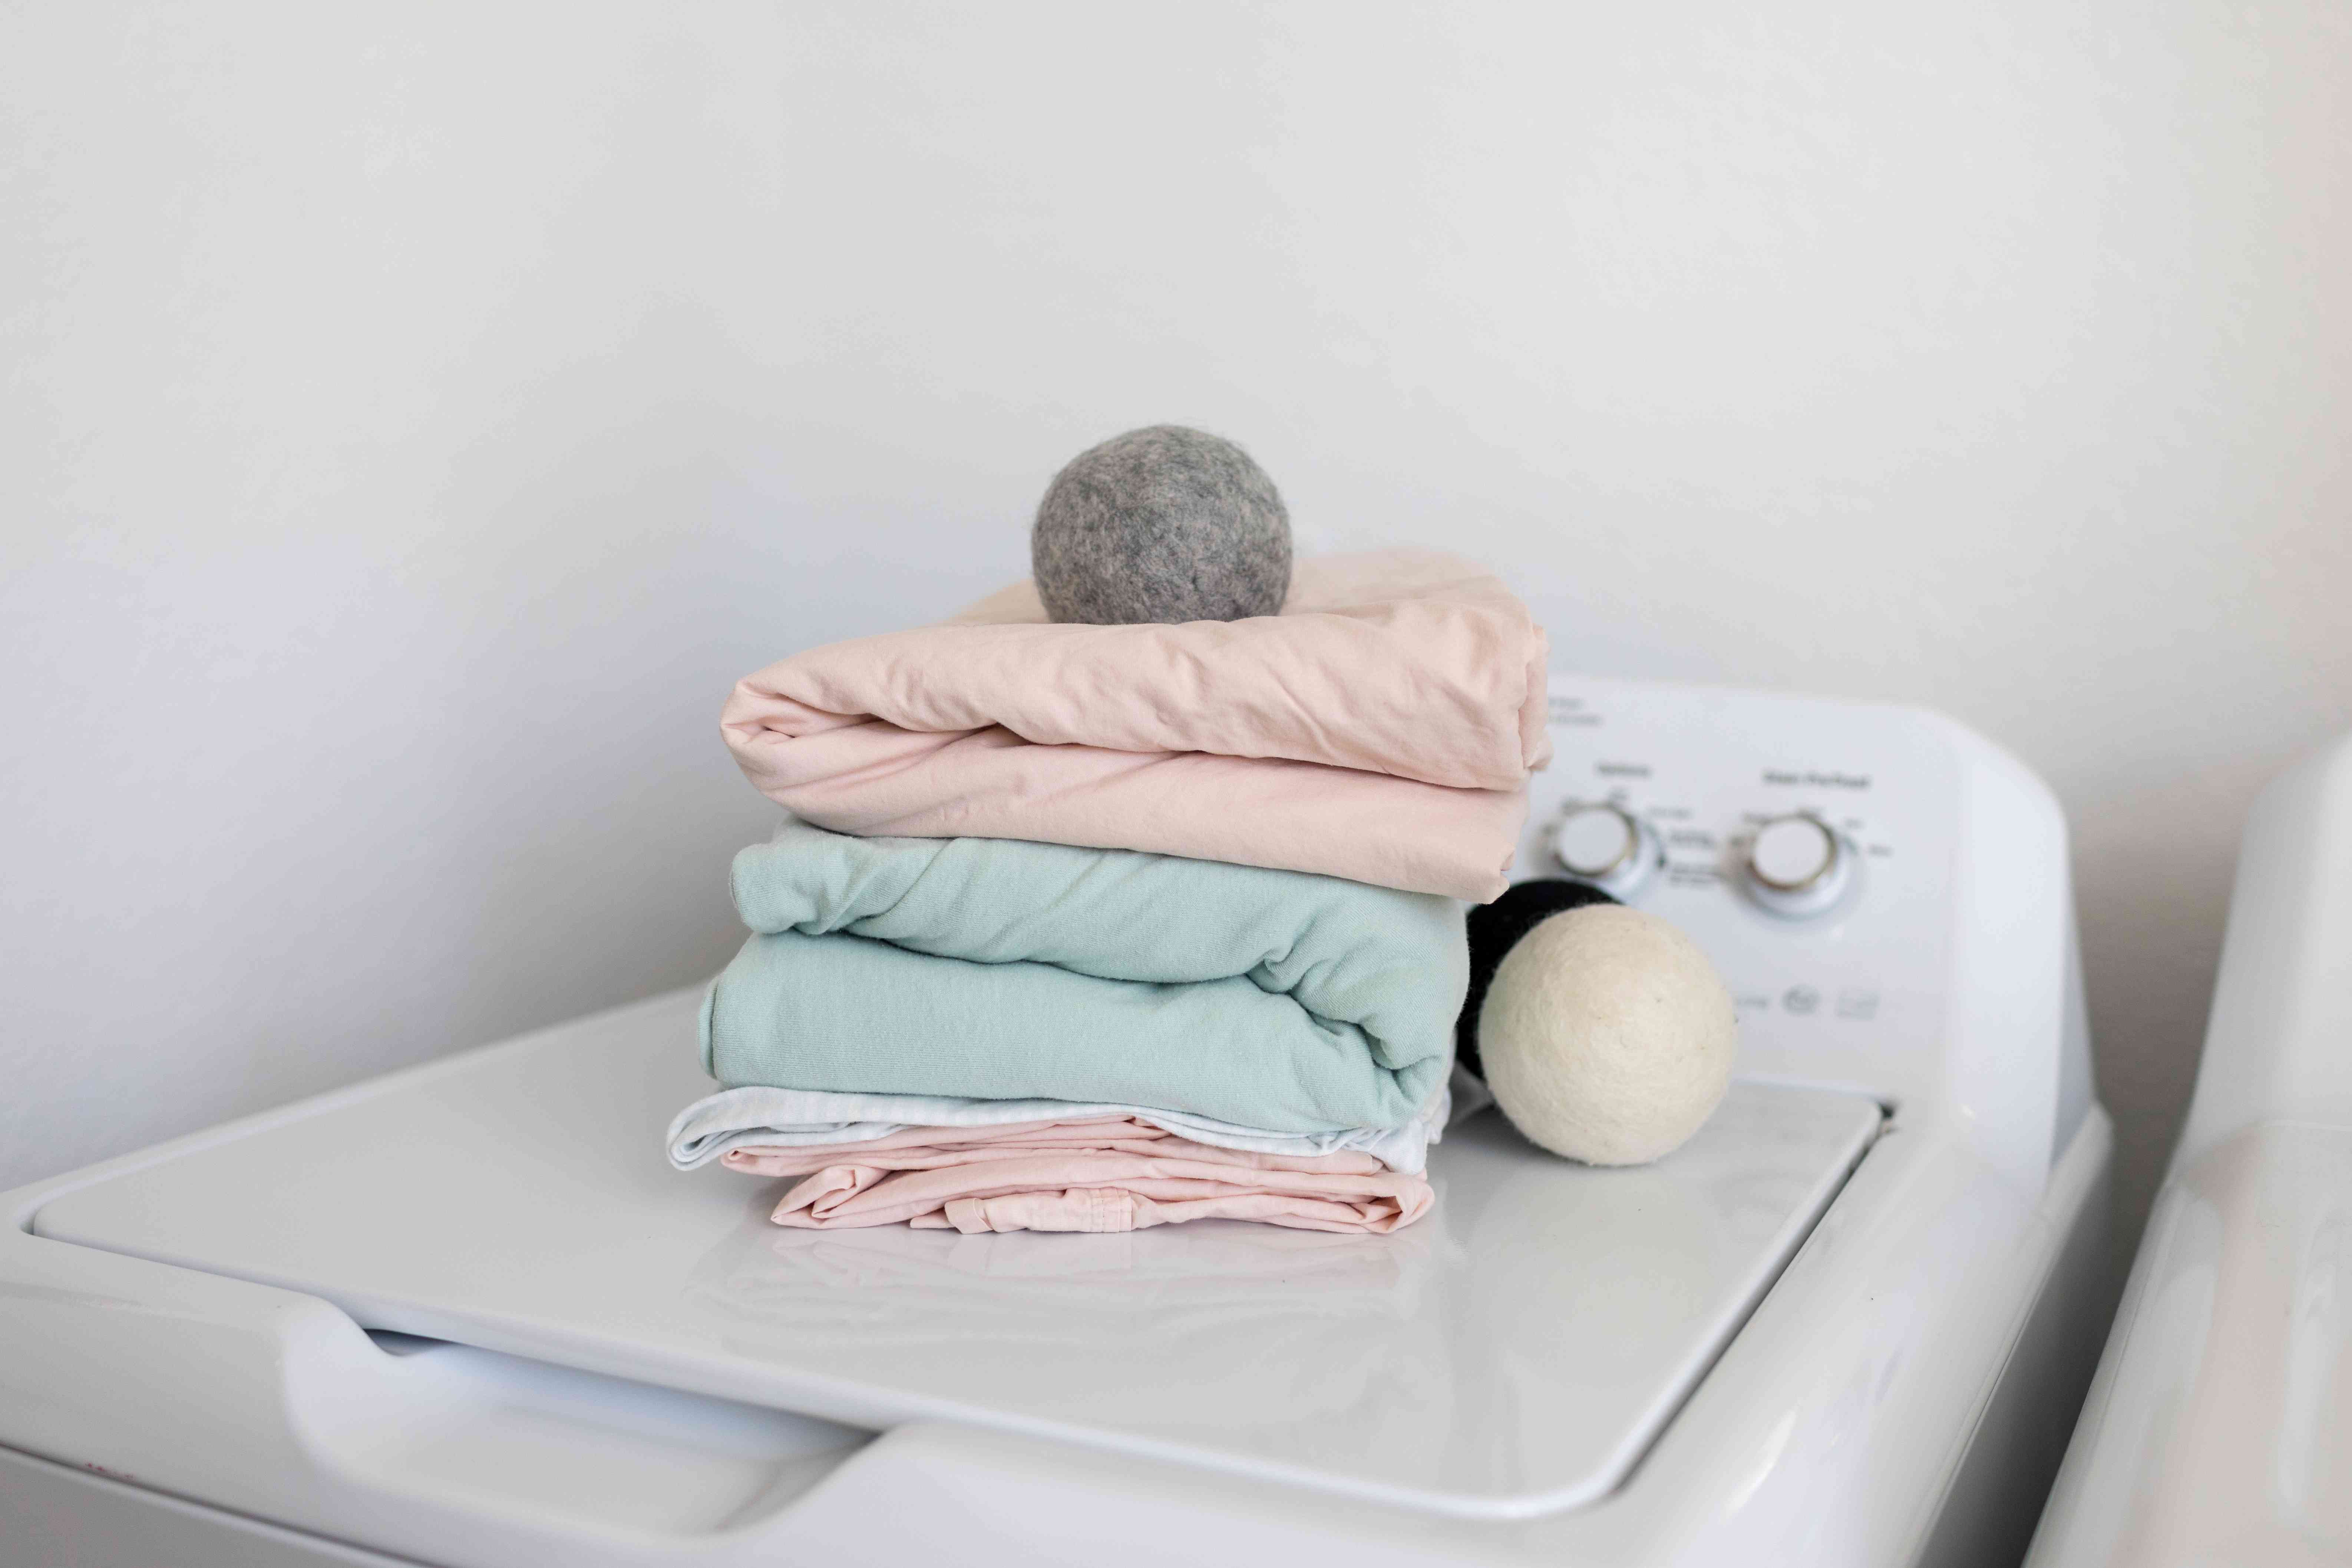 洗衣机顶部的折叠床单和羊毛干球